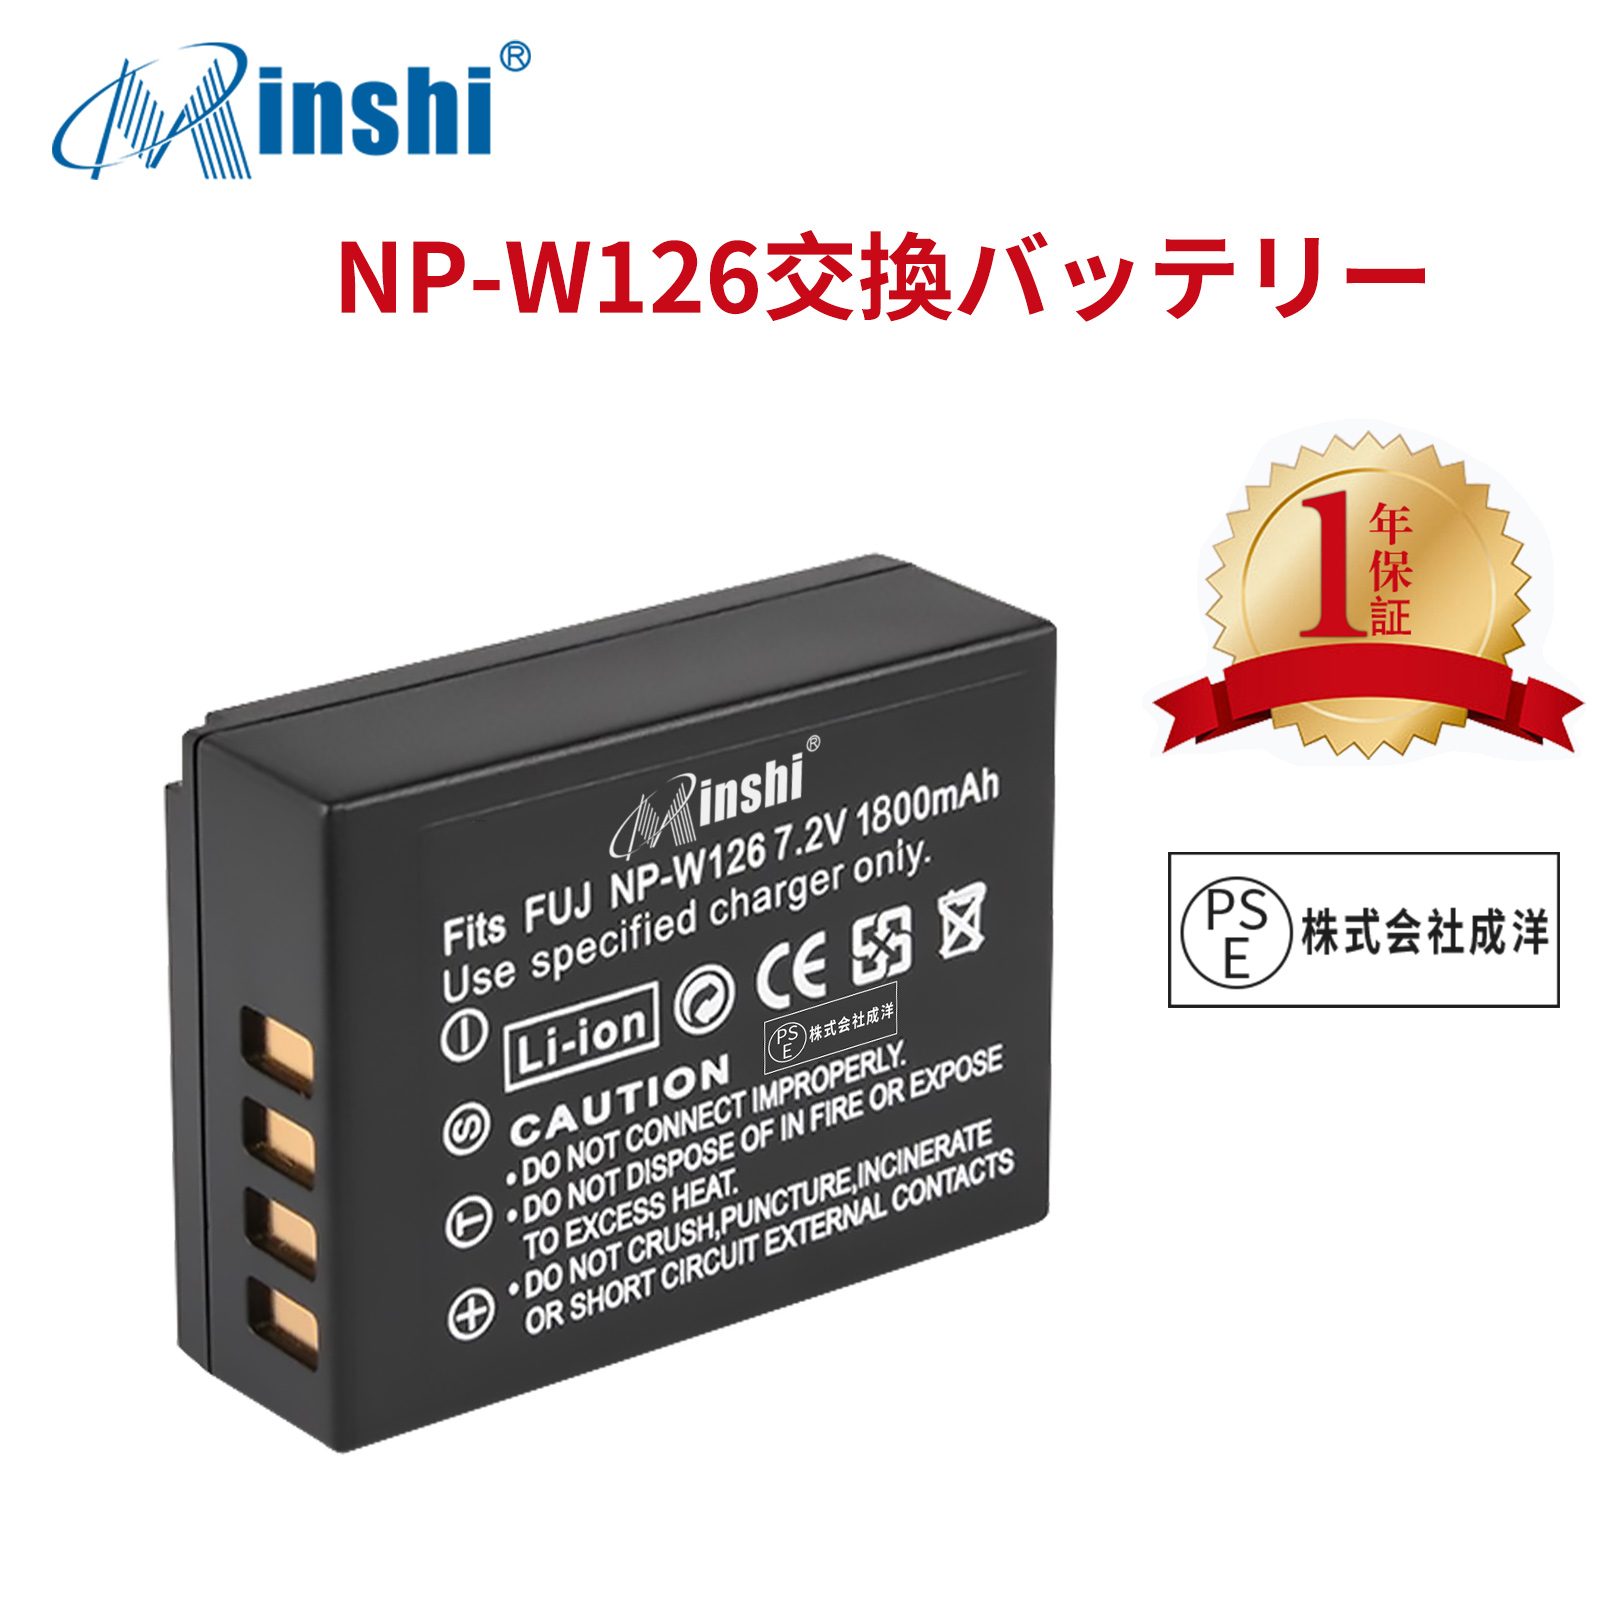 【1年保証】minshi FUJIFILM FinePix HS50EXR【1800mAh 7.2V】 NP-W126 NP-W126S高品質 NP-W126S NP-W126互換バッテリー